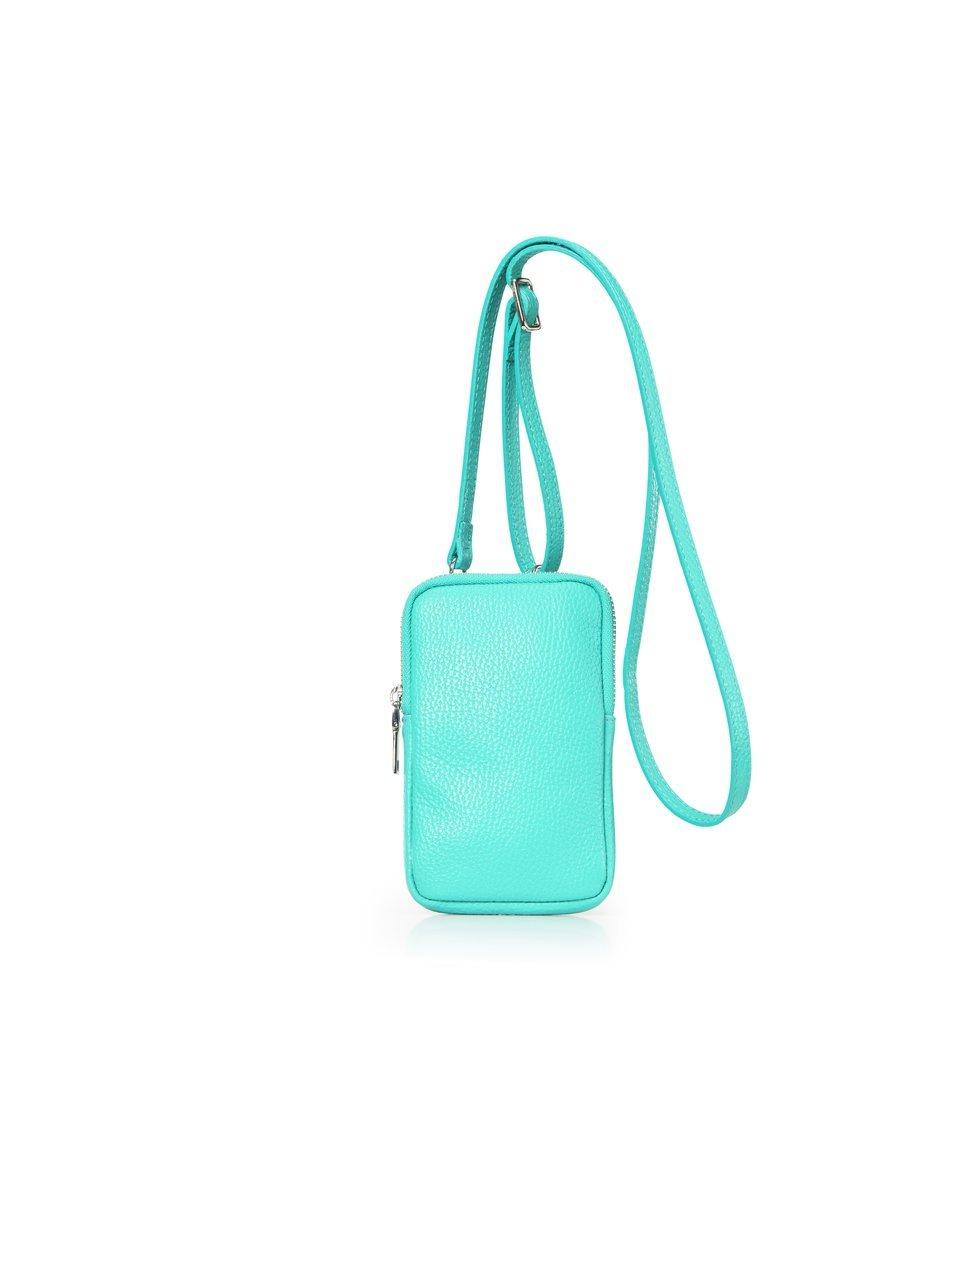 Rundleren tasje voor de mobiele telefoon Van Peter Hahn turquoise